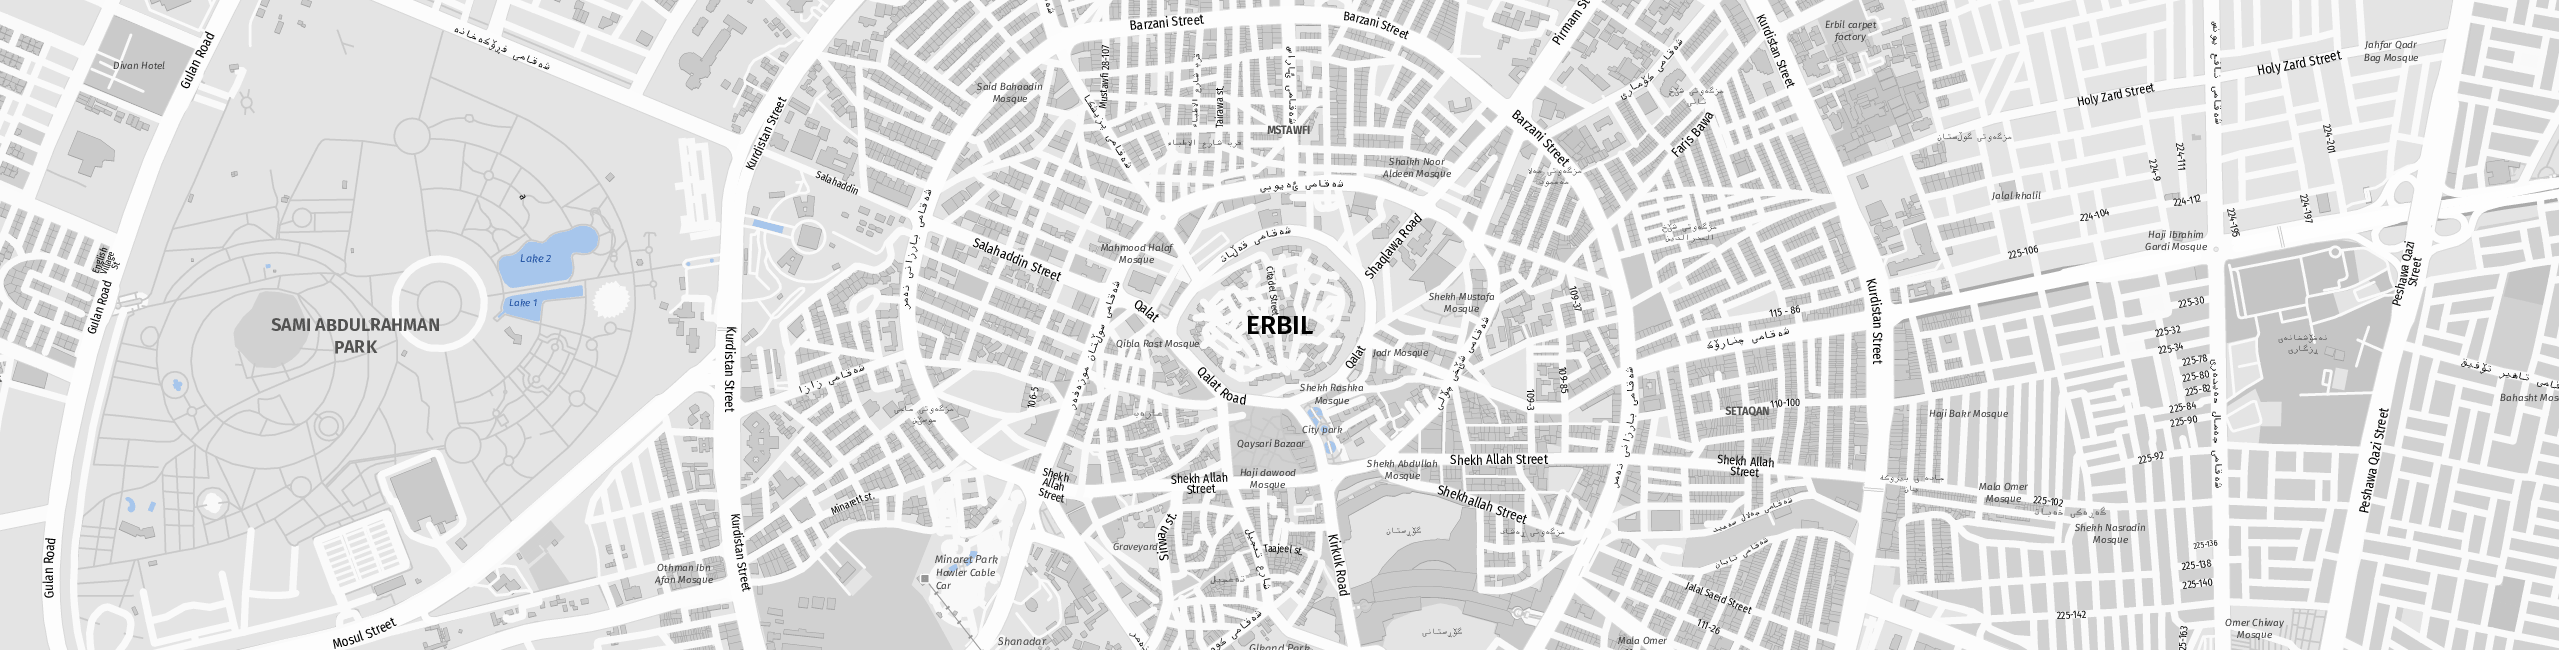 Stadtplan Arbil zum Downloaden.